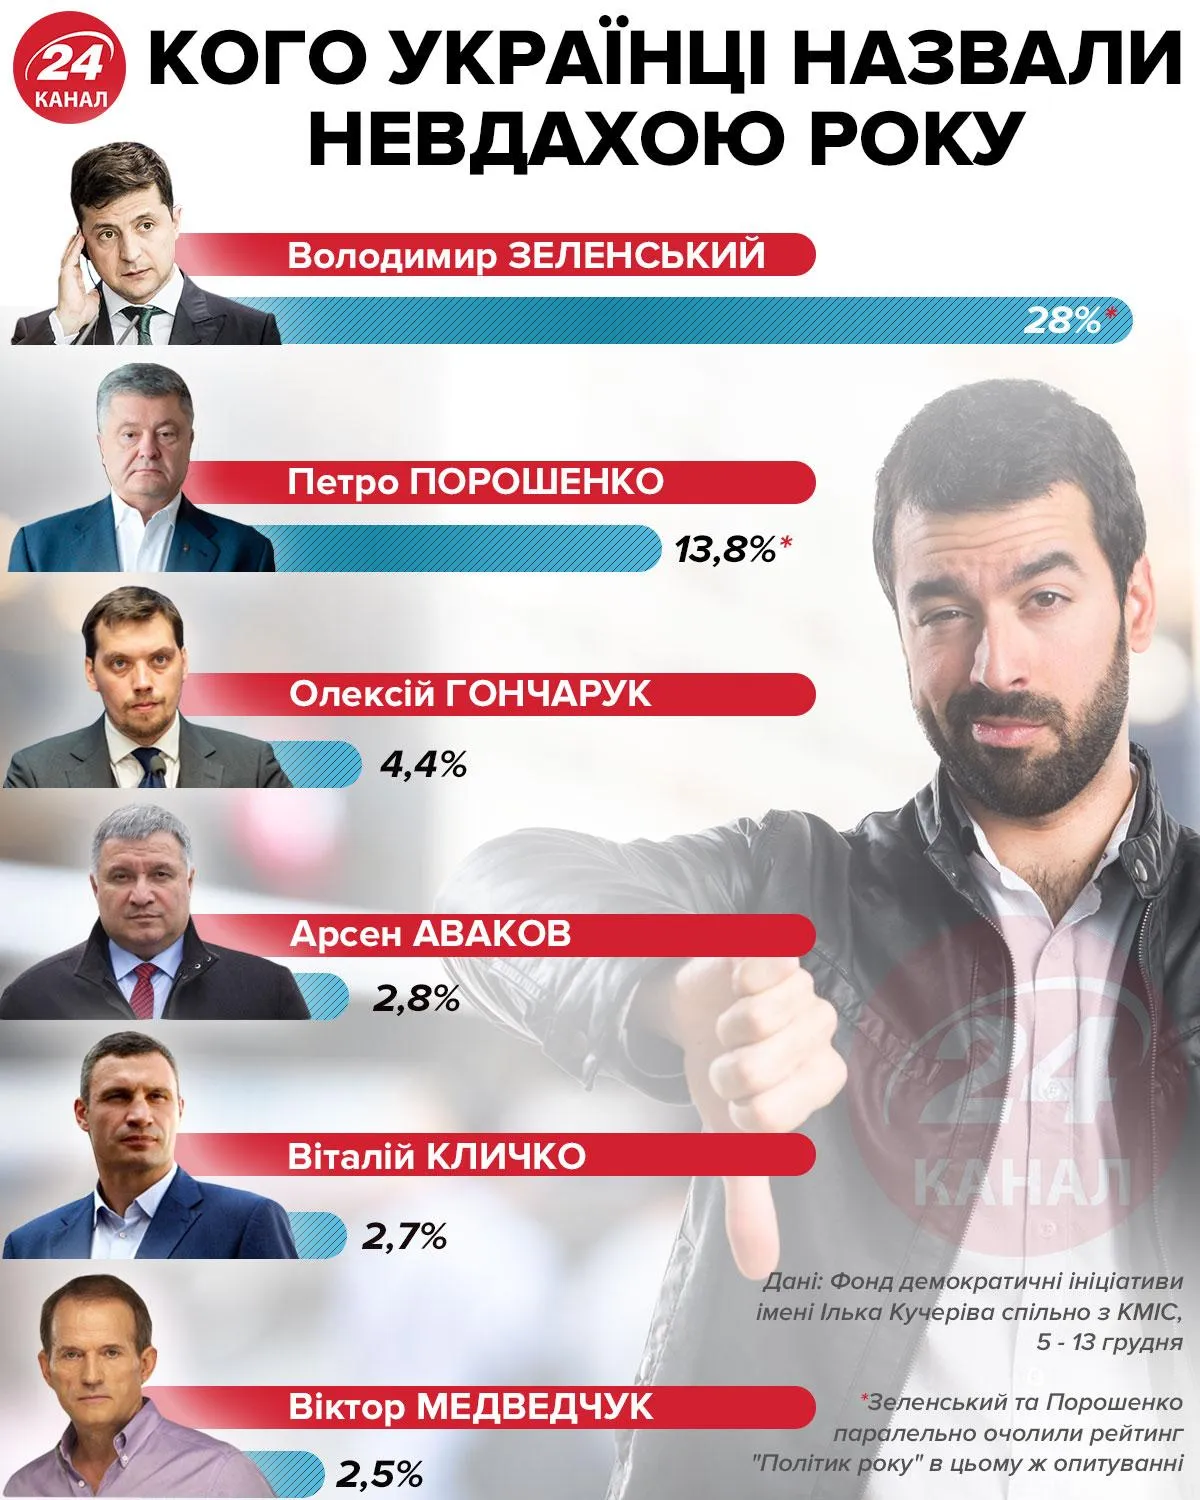 Кто неудачник года по версии украинцев инфографика 24 канал